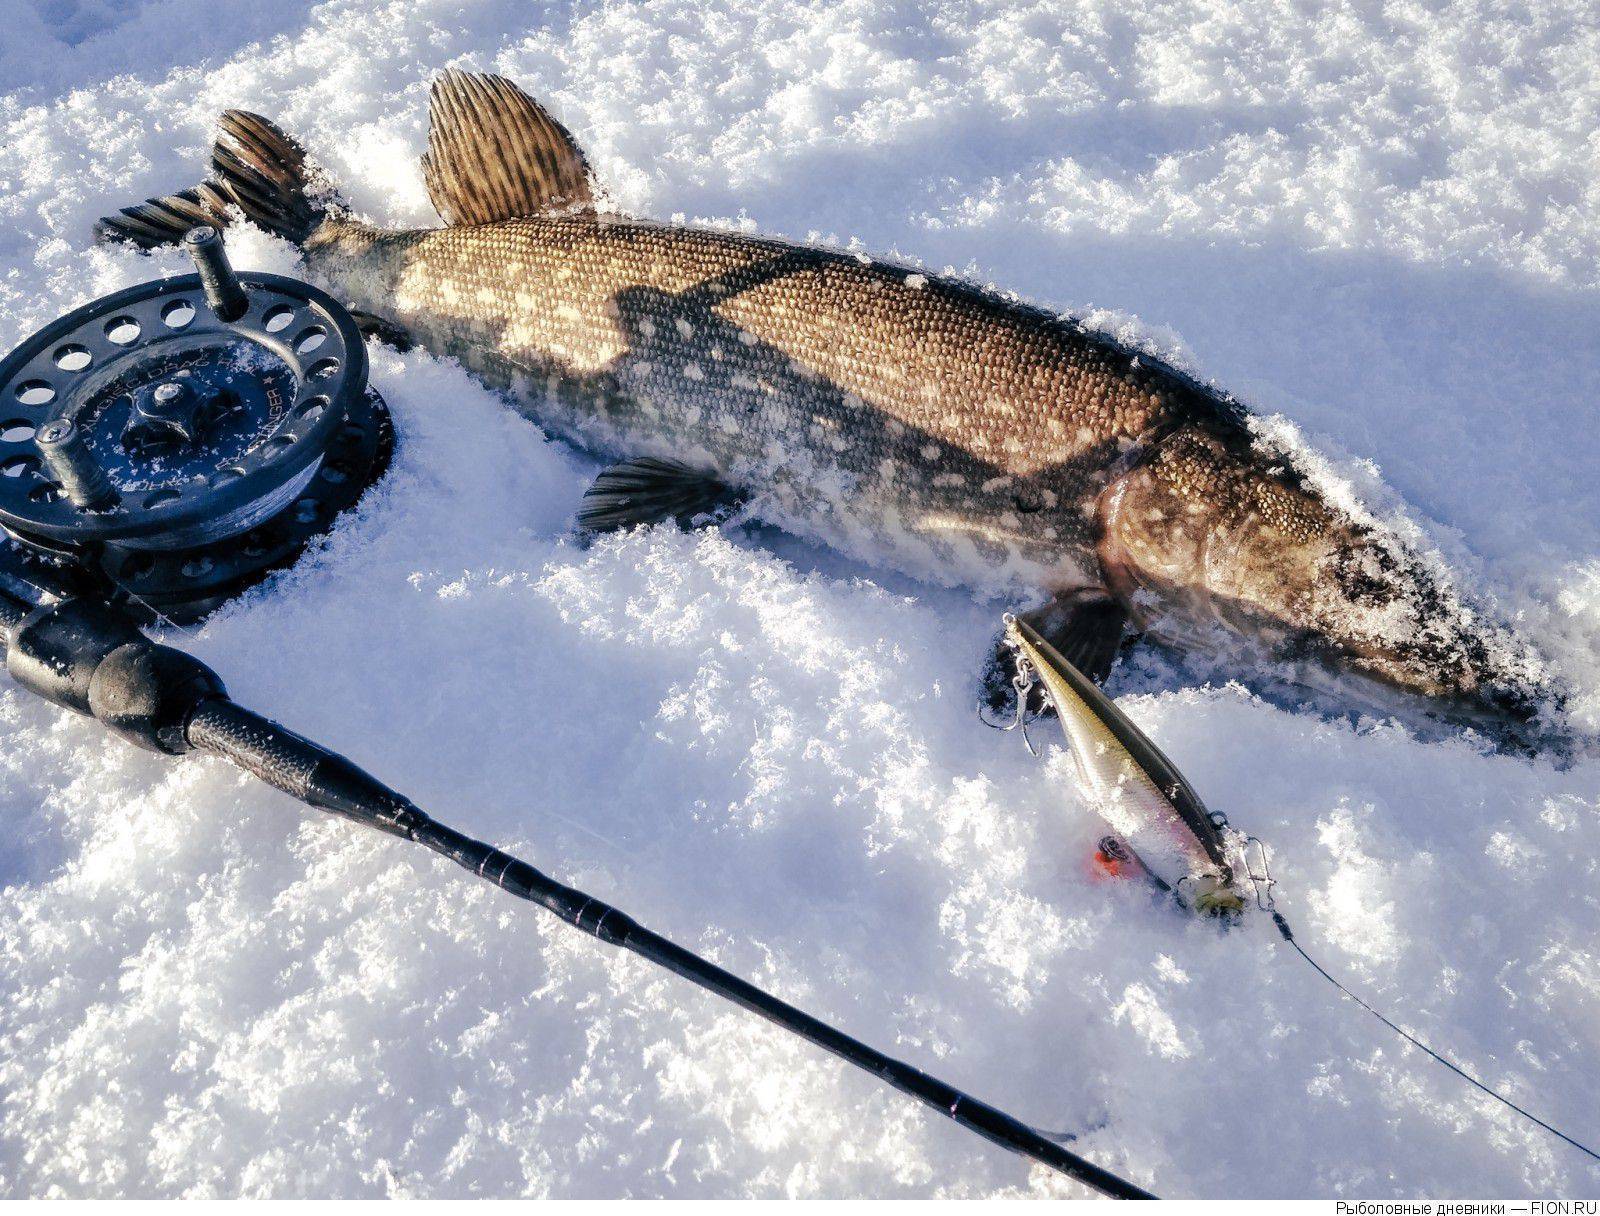 Снасти для зимней рыбалки какие есть снасти и что брать с собой на зимнюю рыбалку новичку. советы по выбору снастей